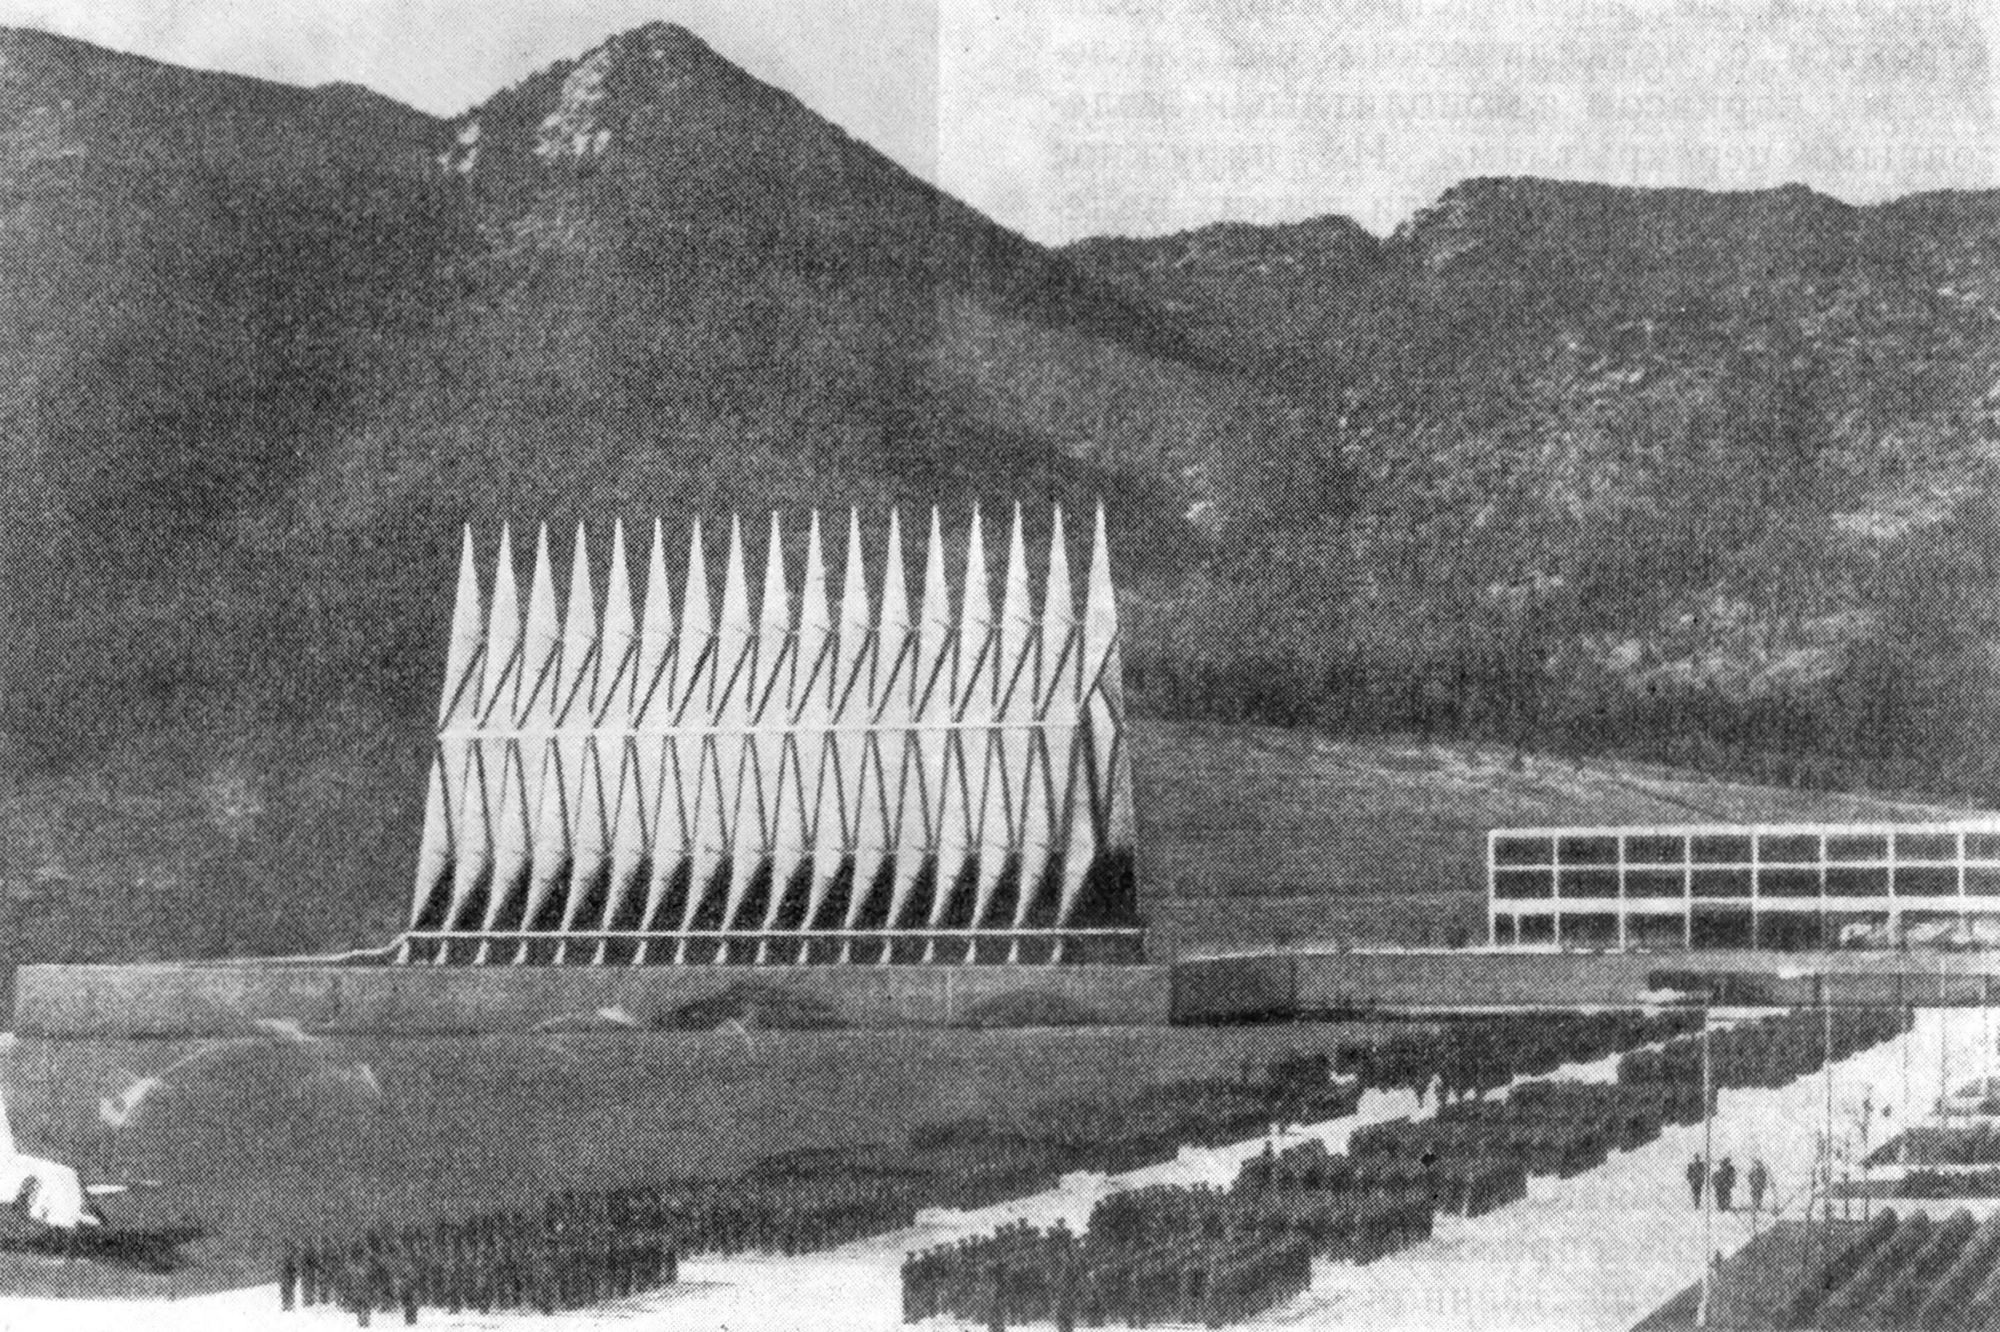 74. Колорадо-Спрингс. Часовня академии ВВС США, 1961 г. Фирма СОМ (архитекторы Скидмор, Оуингс, Меррил)